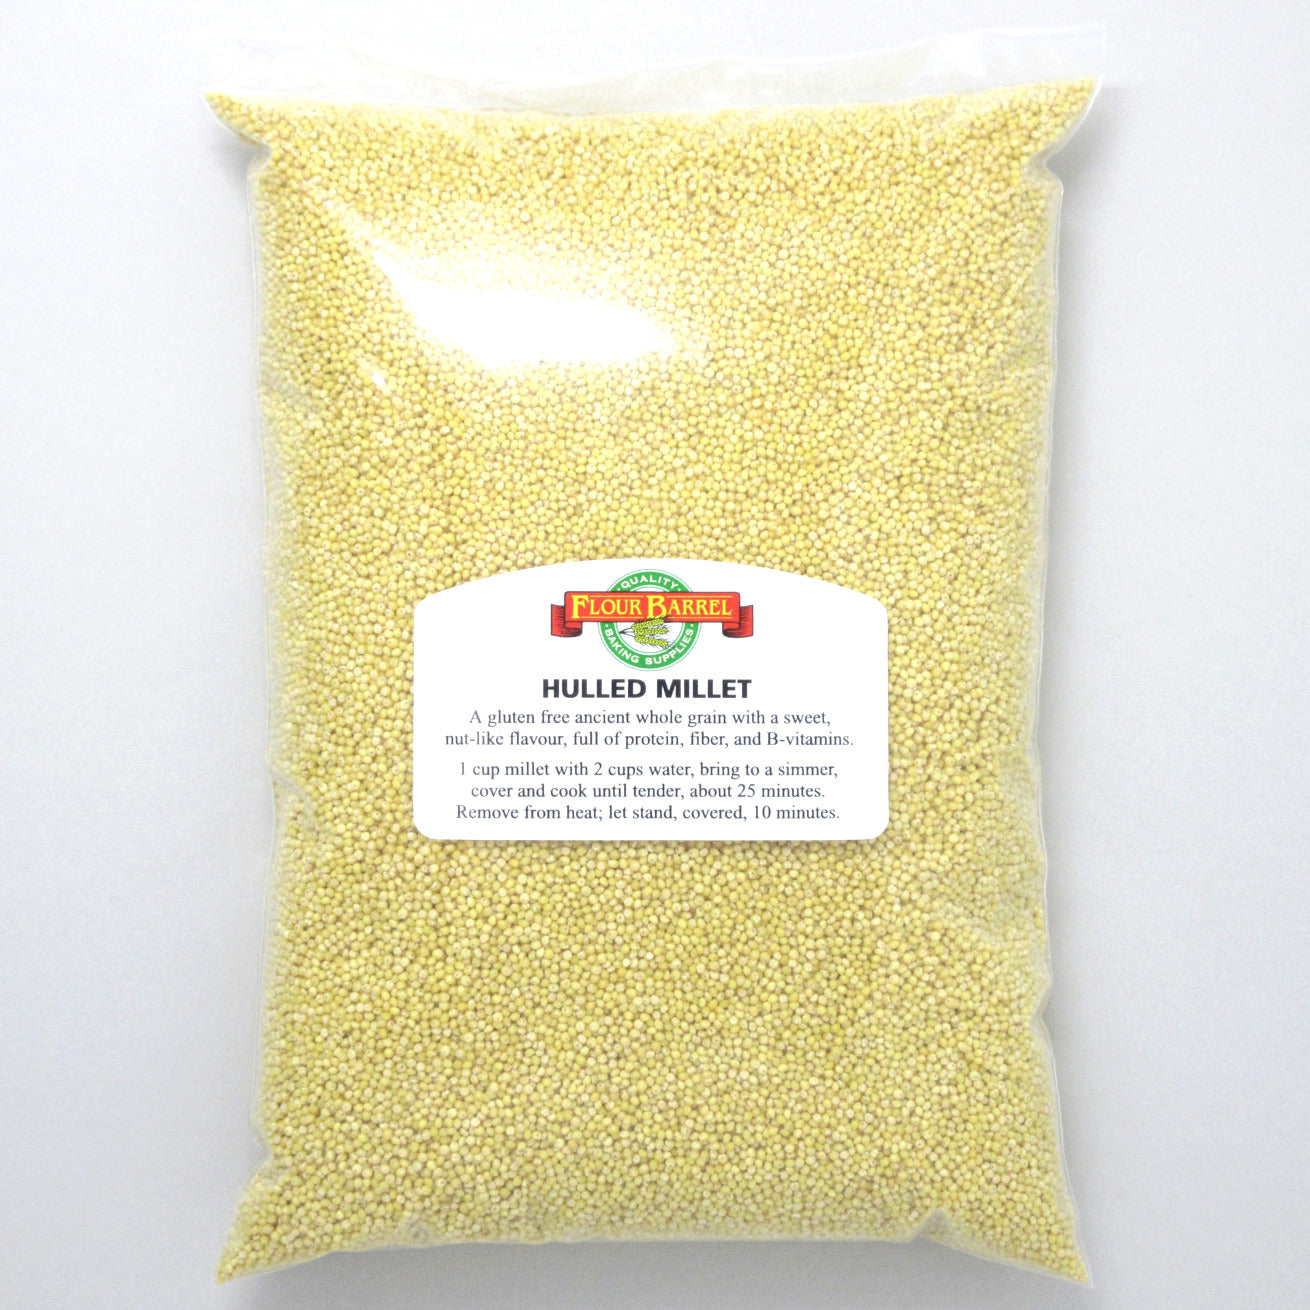 Flour Barrel product image - Hulled Millet